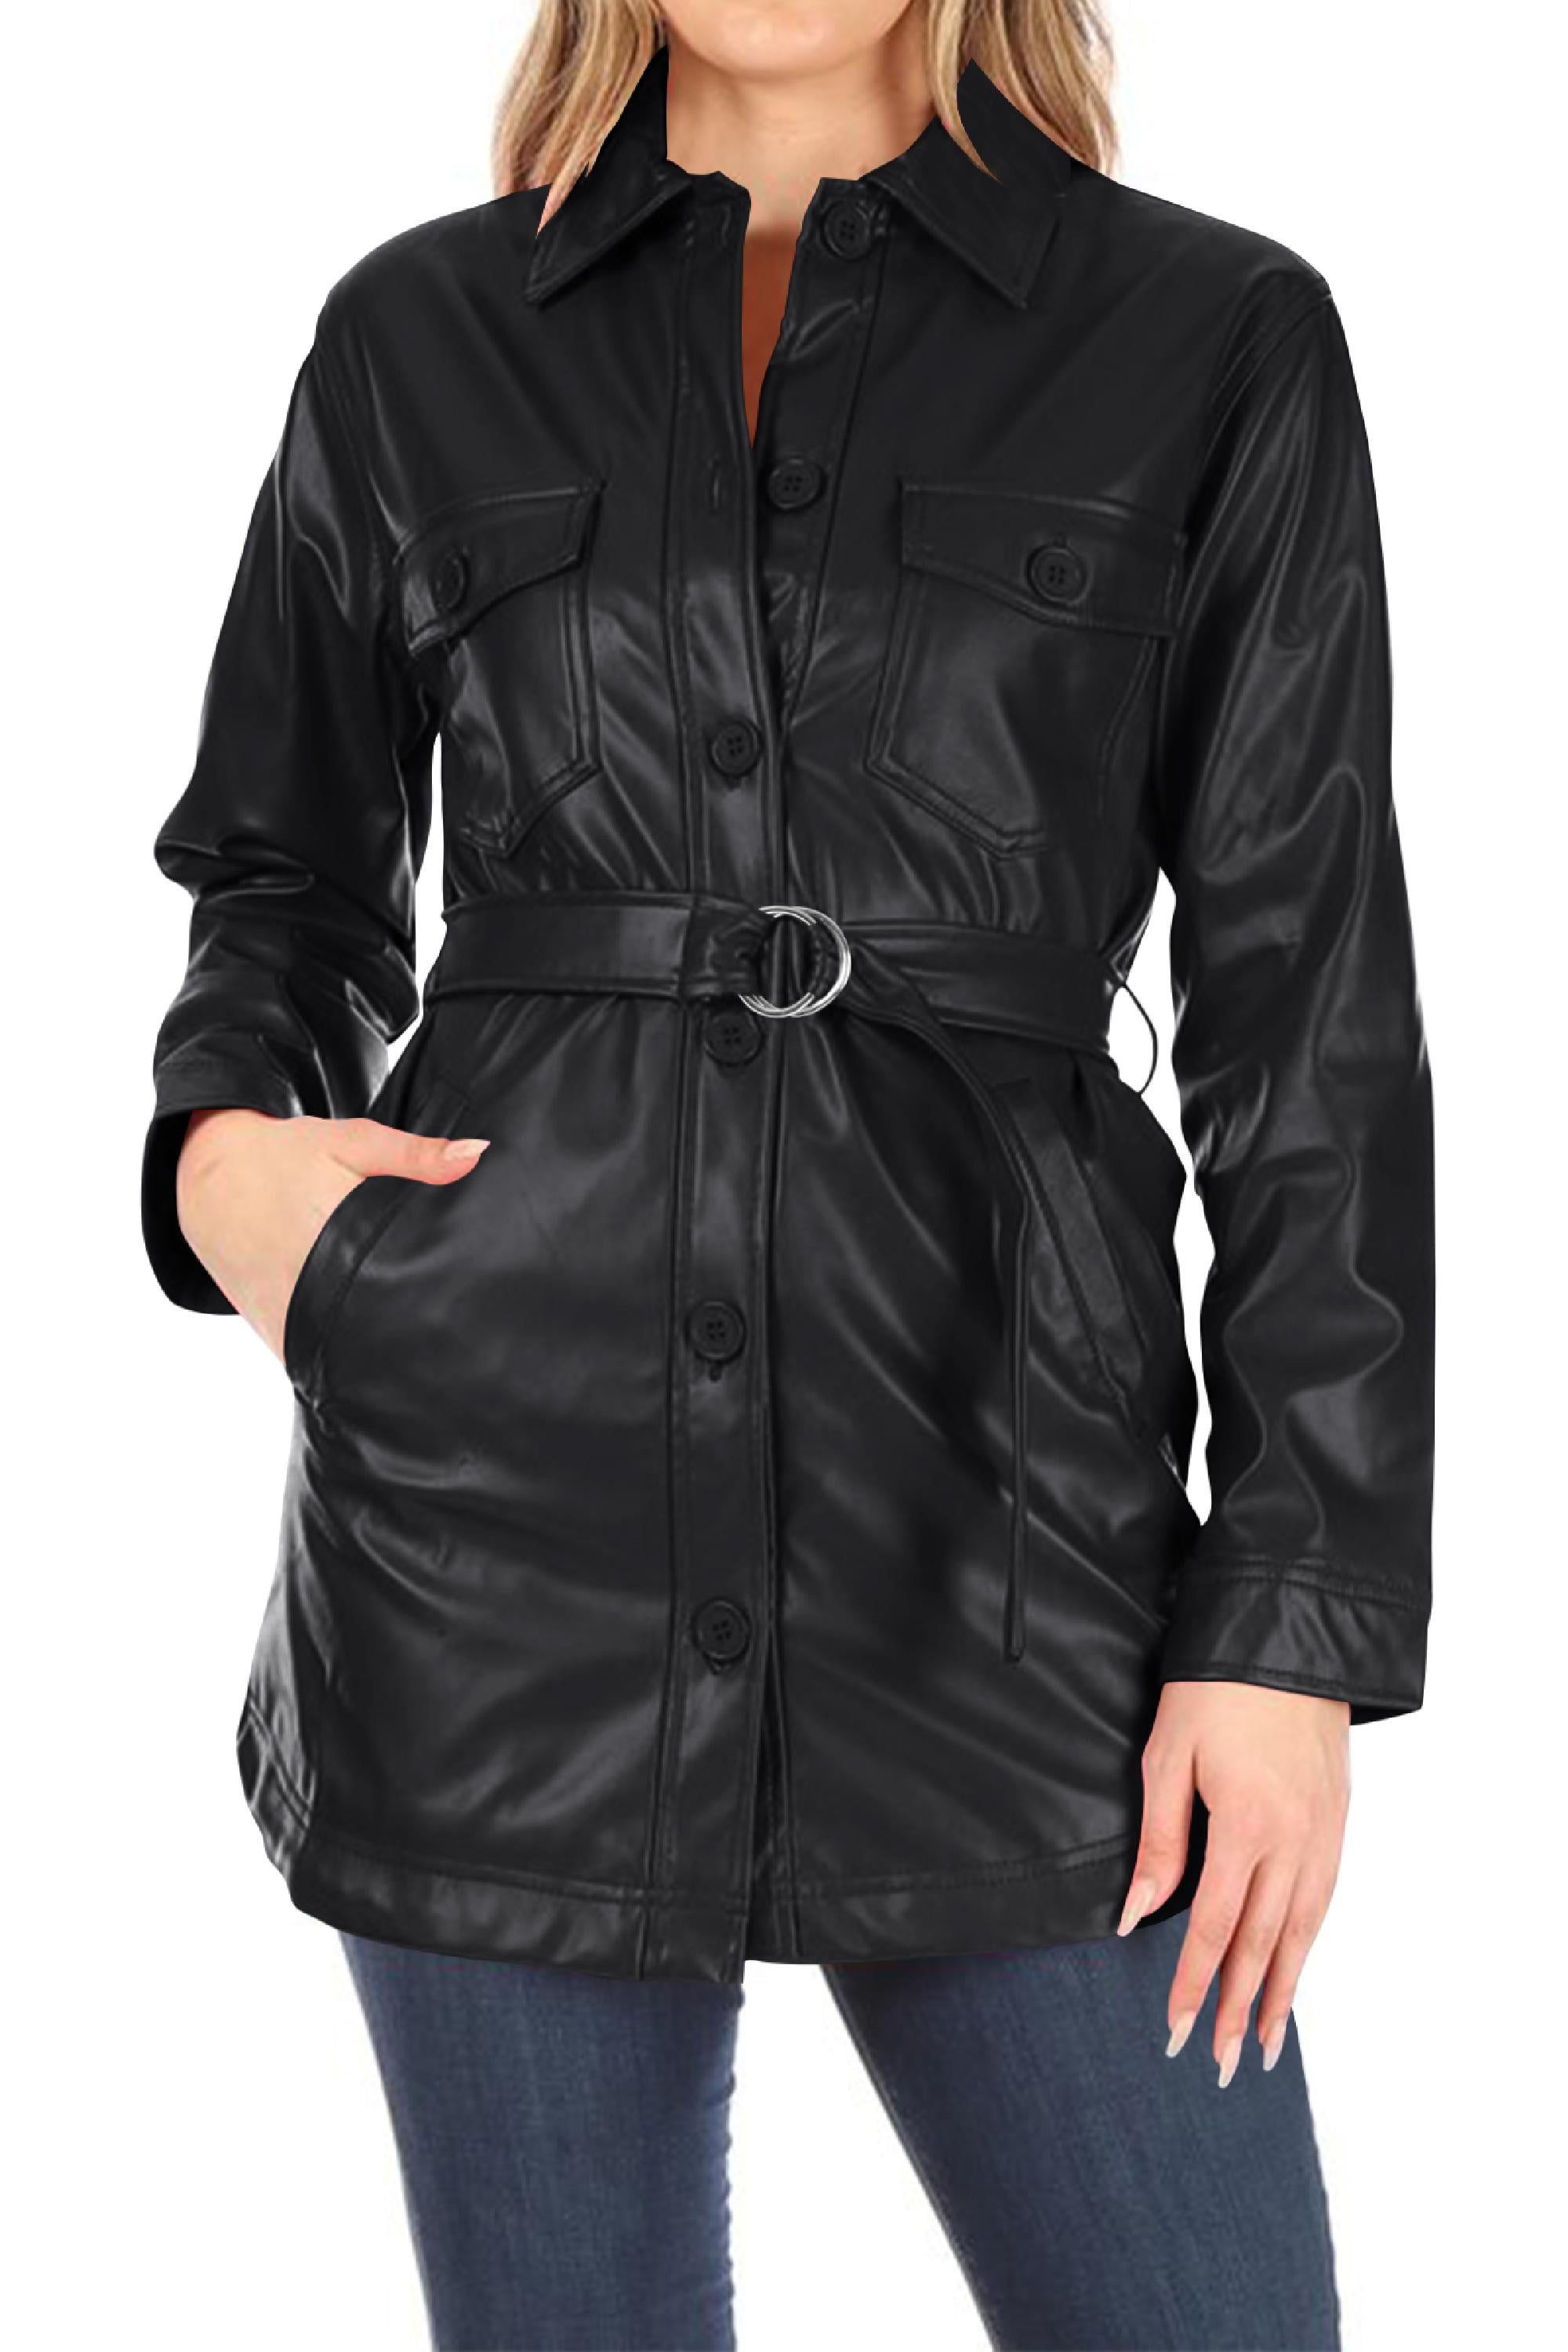 Ladies Long Sleeve Faux Leather Smart Side Zip Belted Waist Biker Coat Jacket 